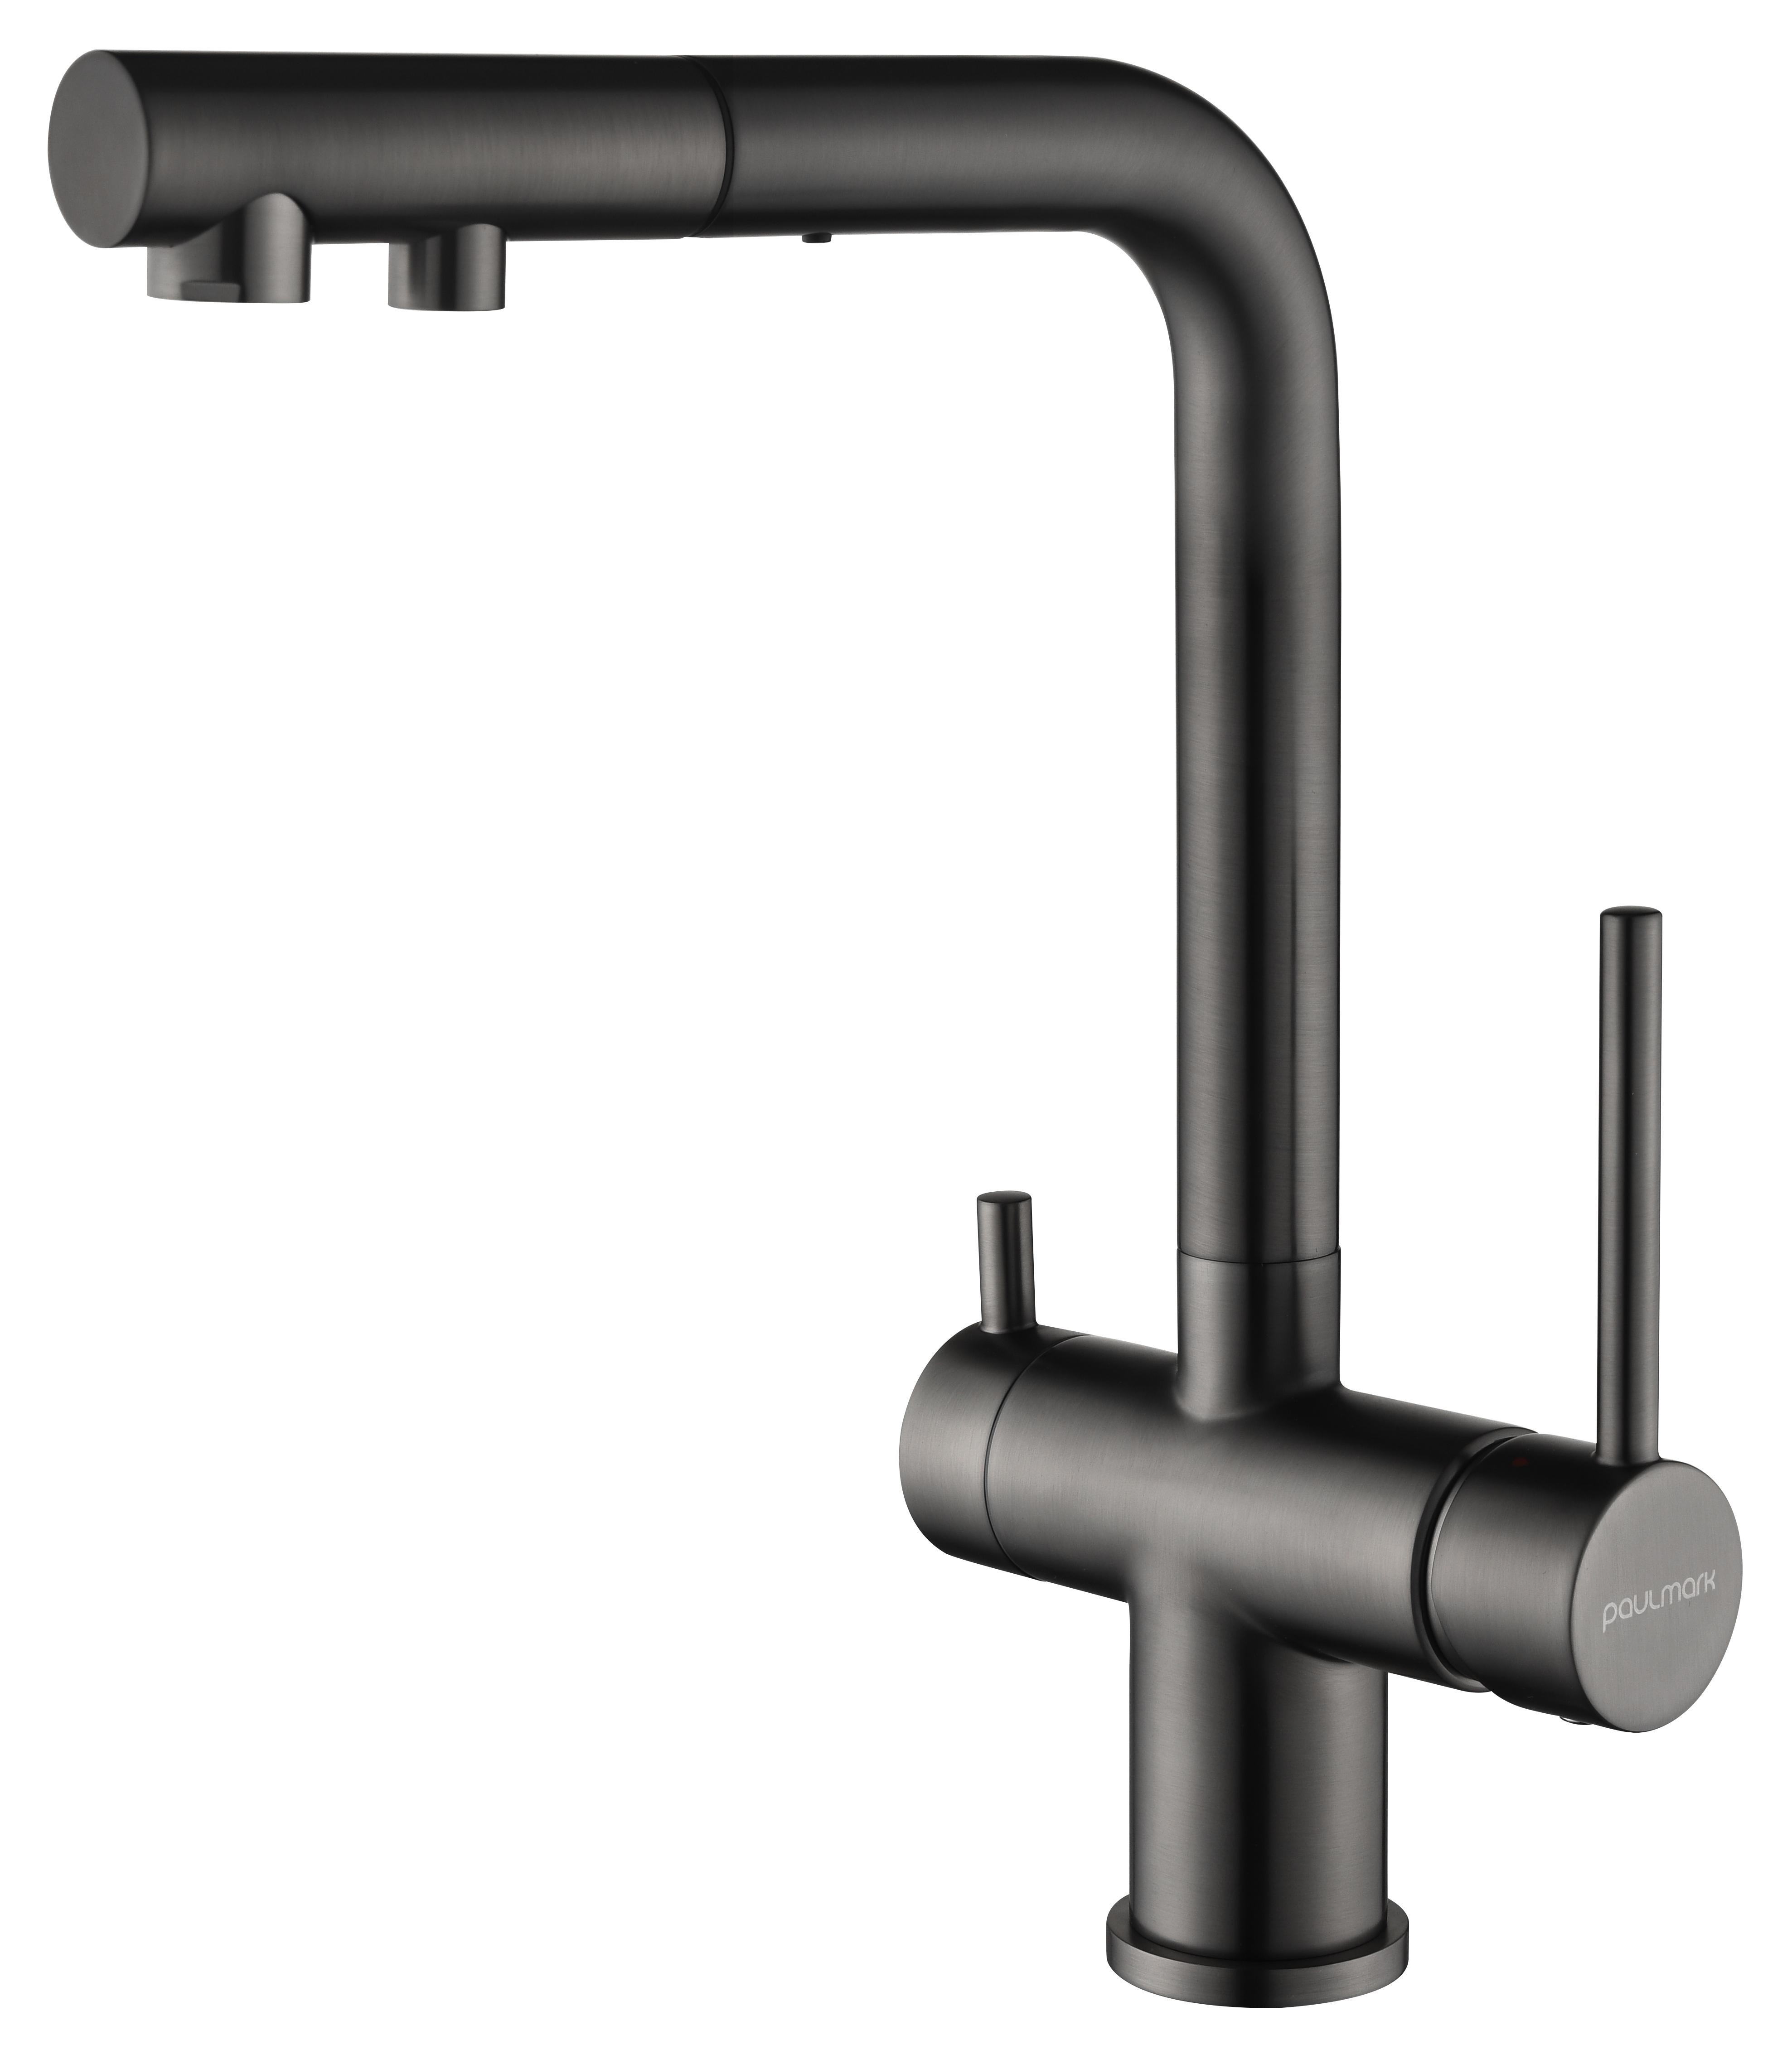 Gappo смеситель для кухни черный. G4398-19 （смеситель для кухни с фильтрам питьевой воды, Оружейная сталь）. Черный смеситель для кухни Gappo картридж. Смеситель Коер 70005-02. Смеситель черно серый.